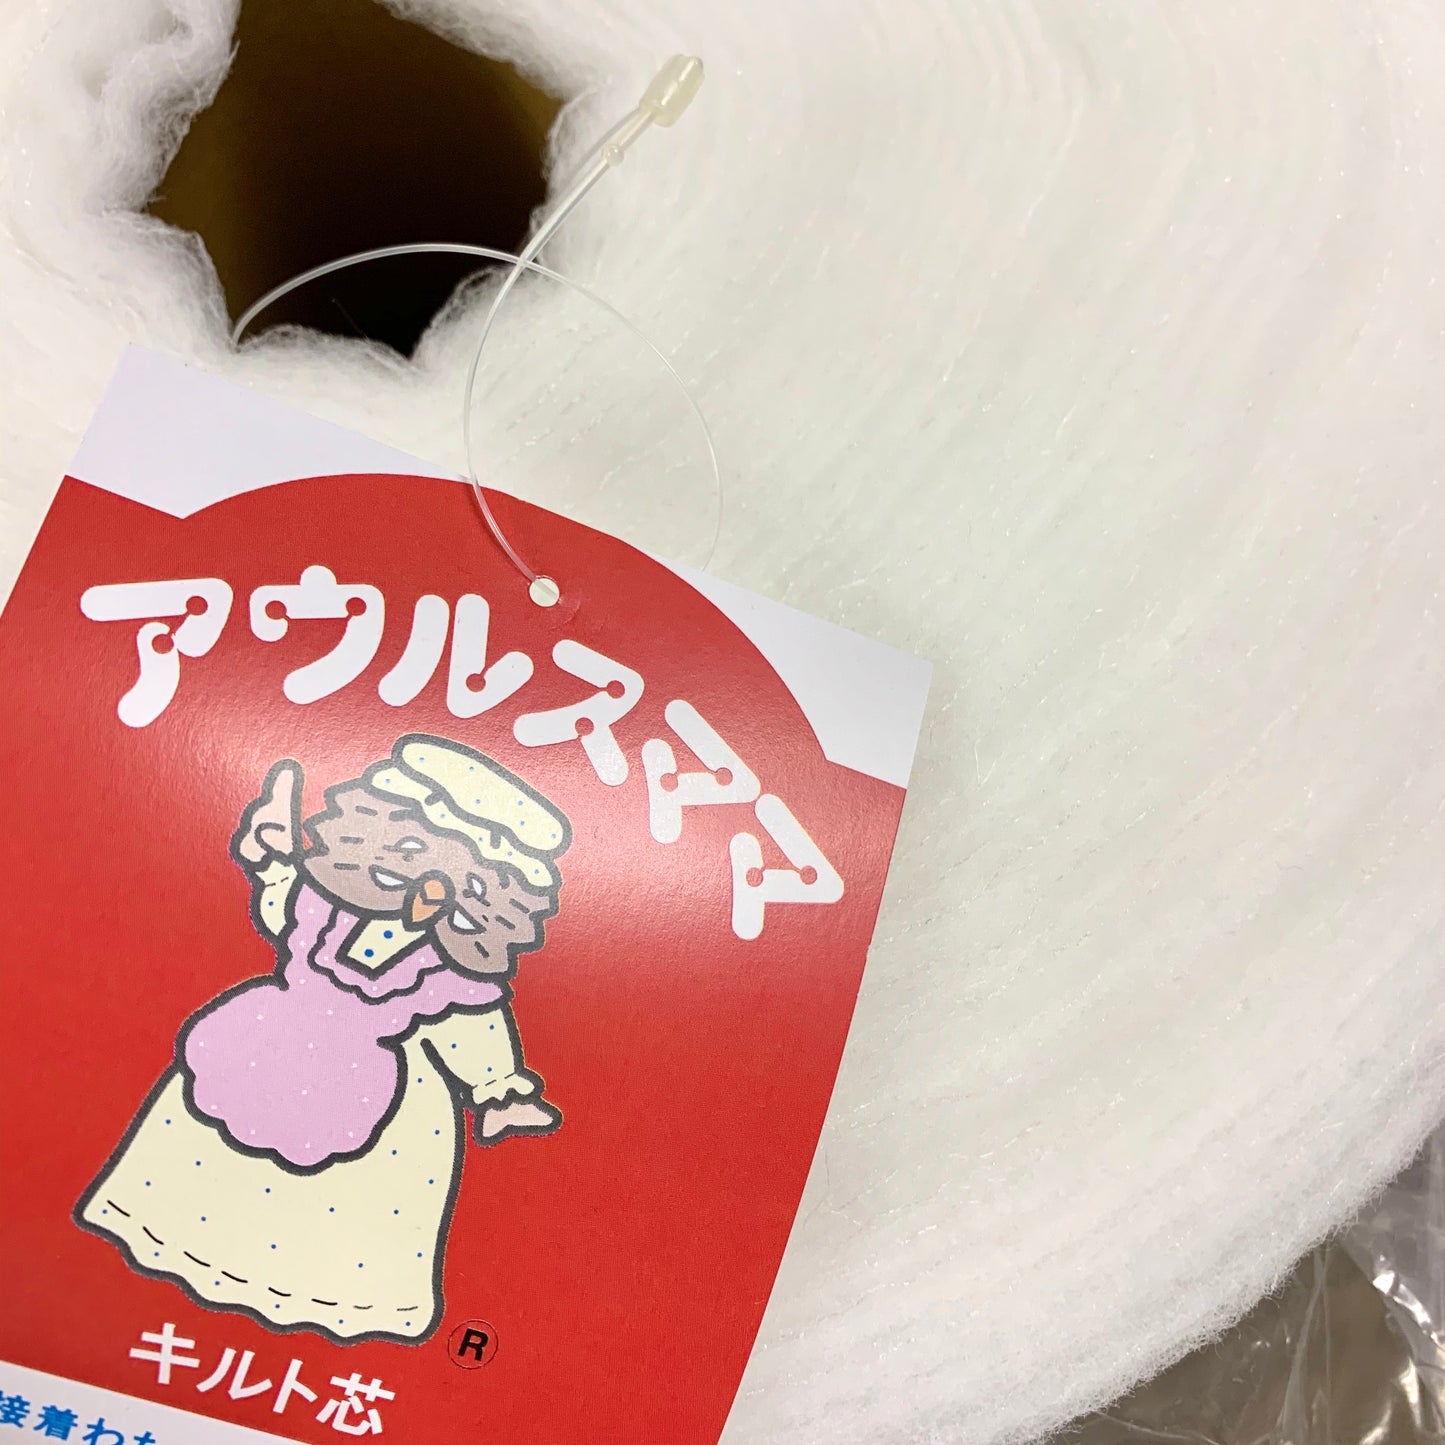 [日本] 日本單面膠 棉朴 棉襯 約6mm厚